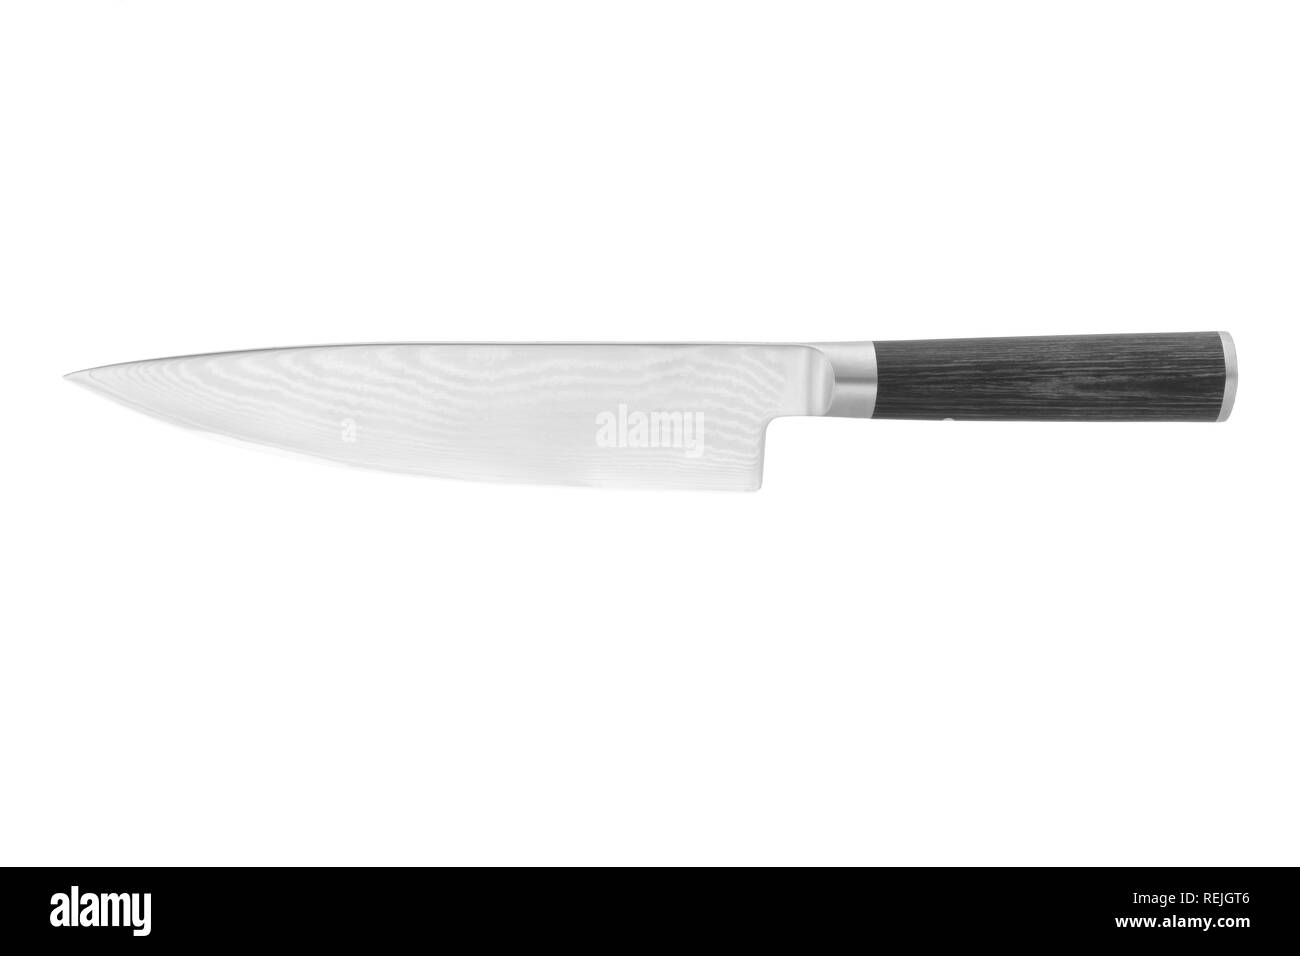 Un couteau Chef japonais sur fond blanc avec clipping path Banque D'Images